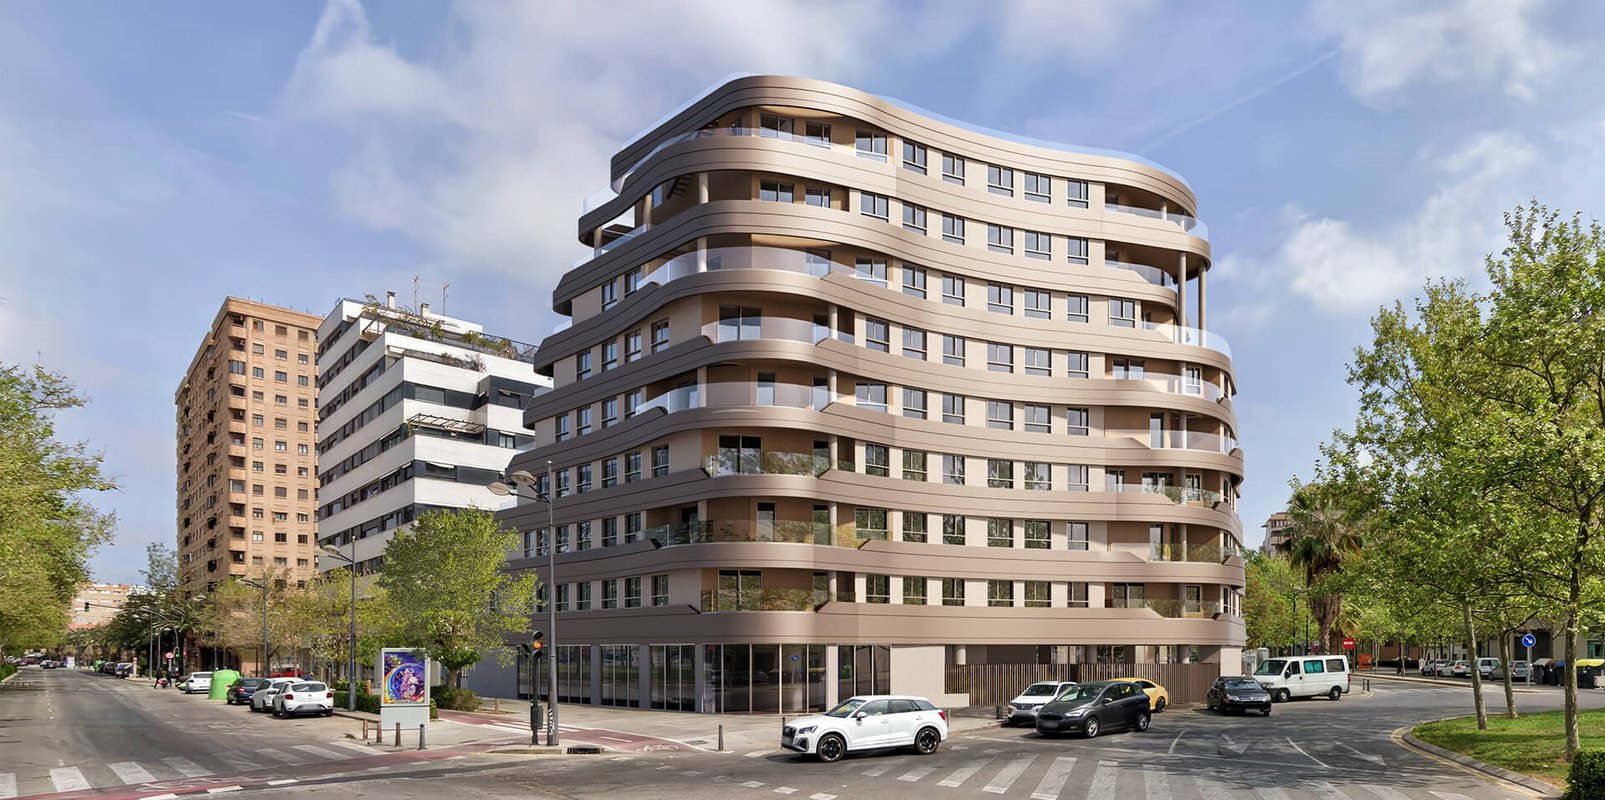 Libra lanza el residencial 'Terrazas de Alfahuir' en Valencia